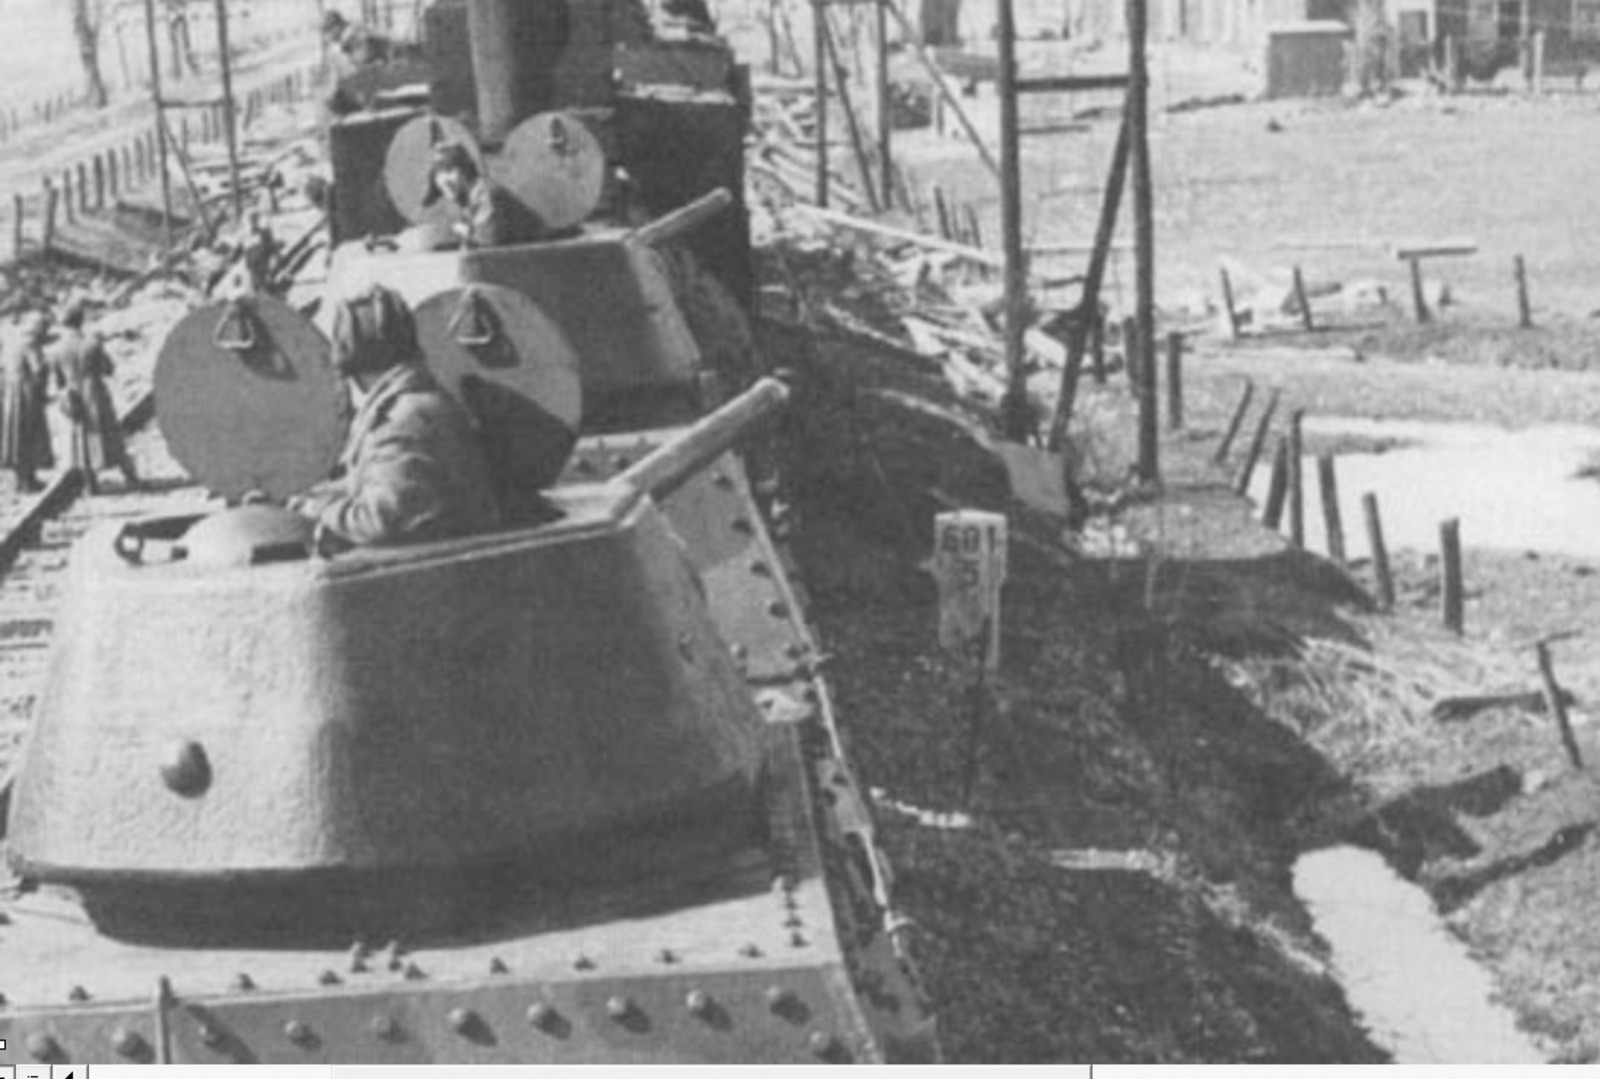 Бронепоезд "Салават Юлаев" с с башнями Т-34 с двумя люками